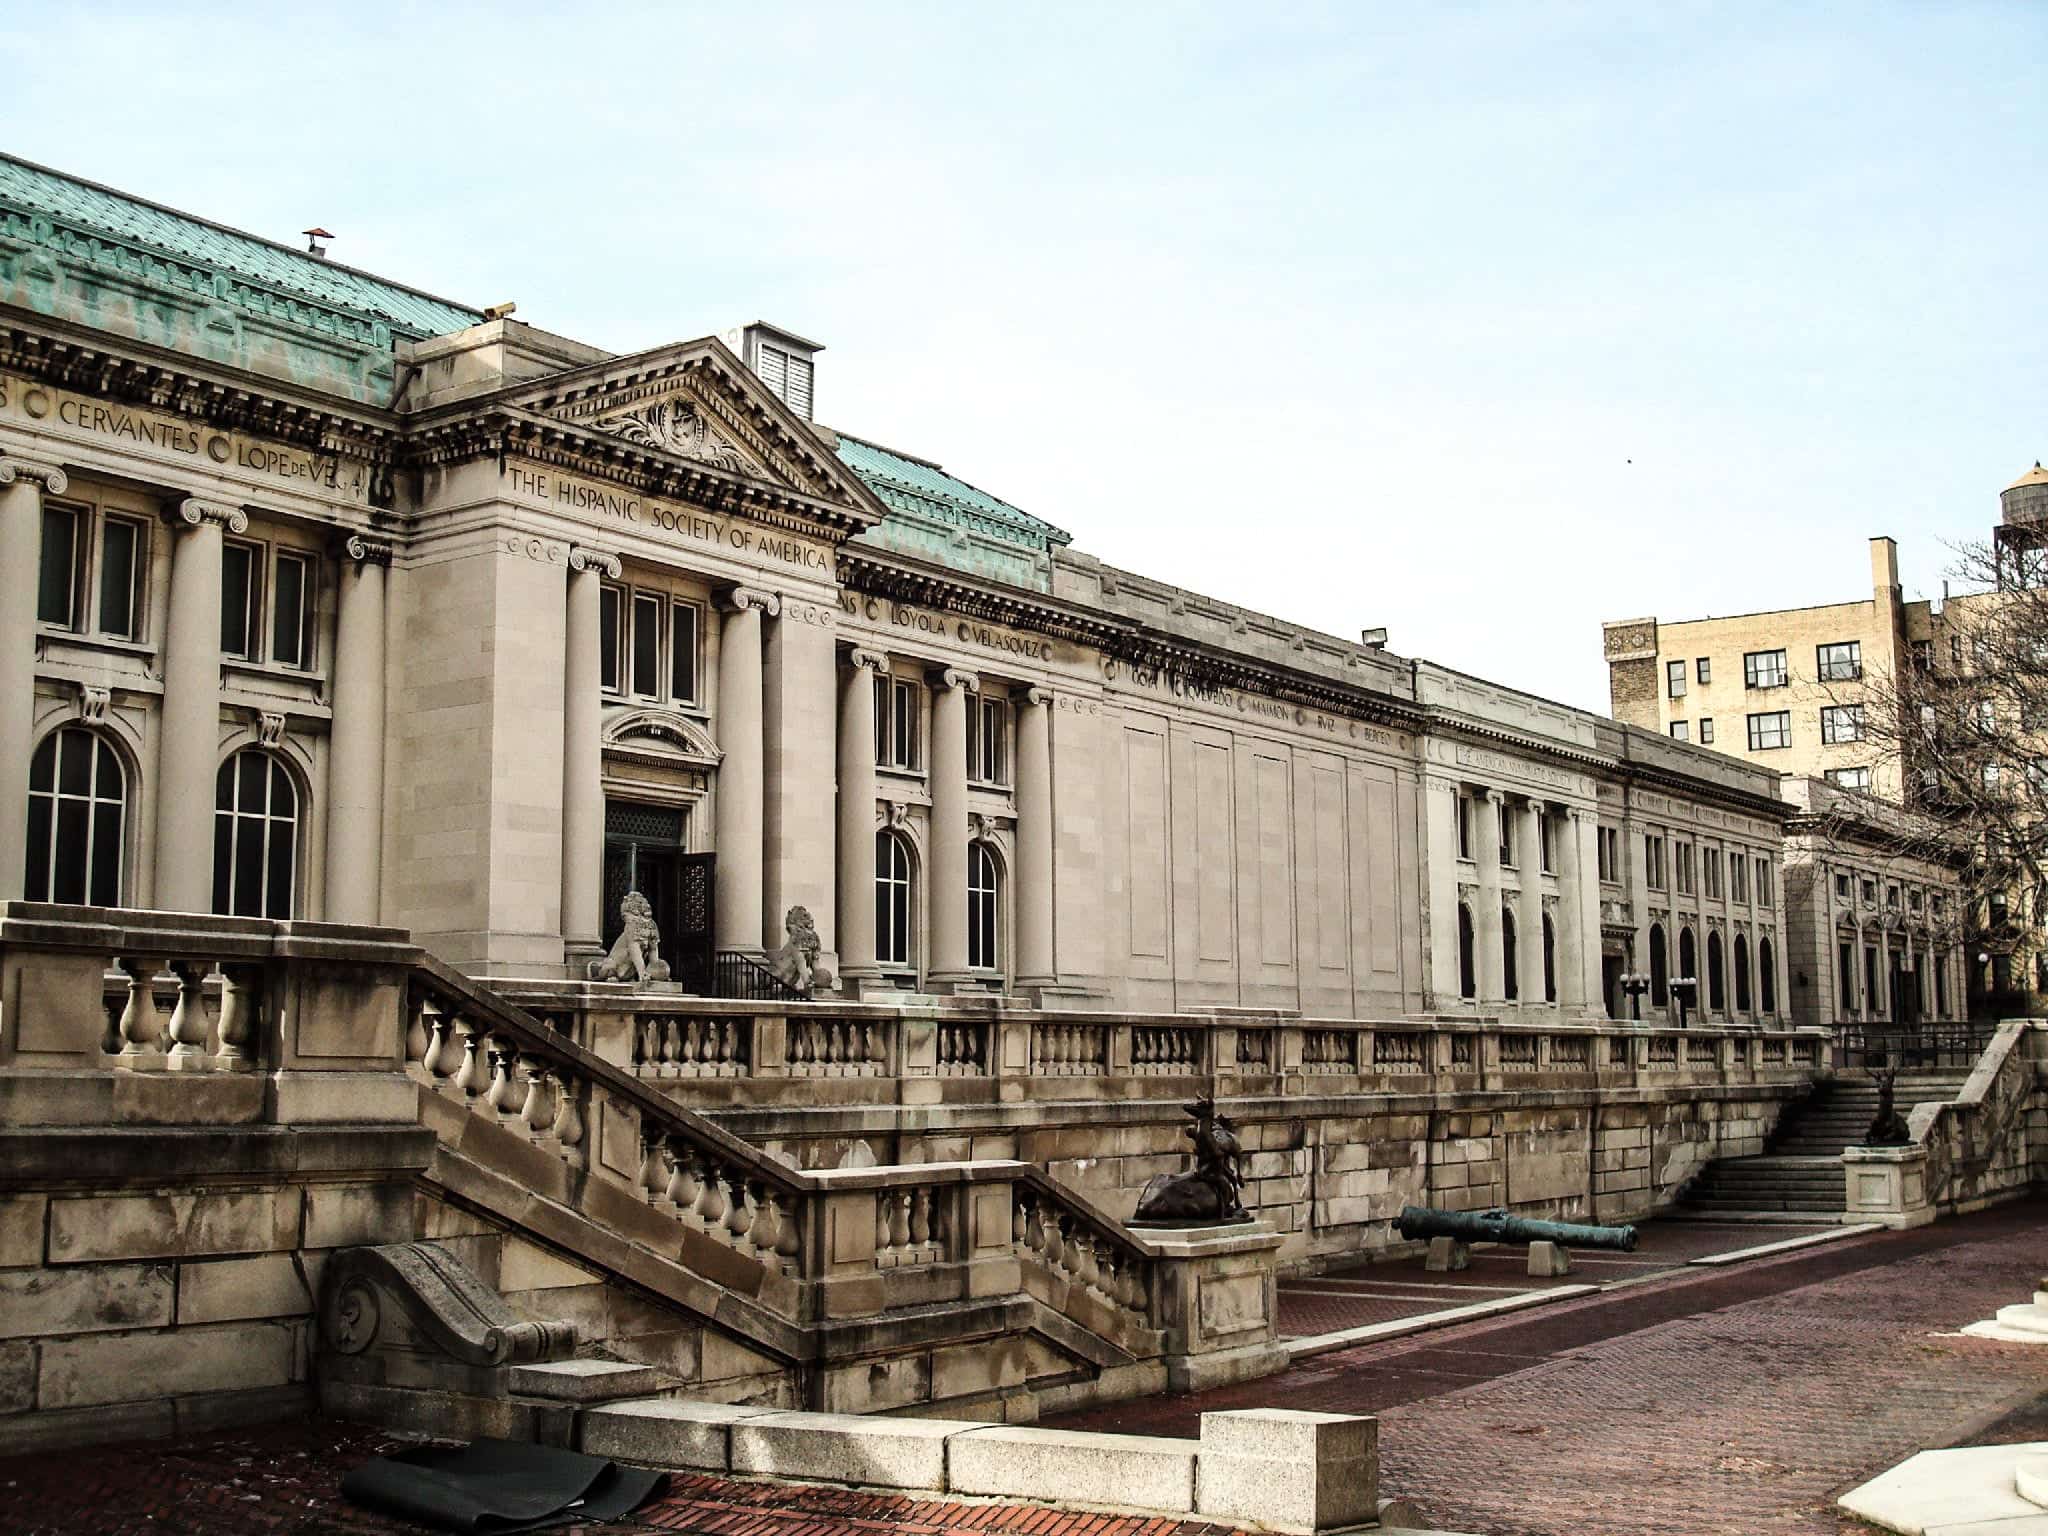 Nova York: 5 museus gratuitos e uma atração bônus!